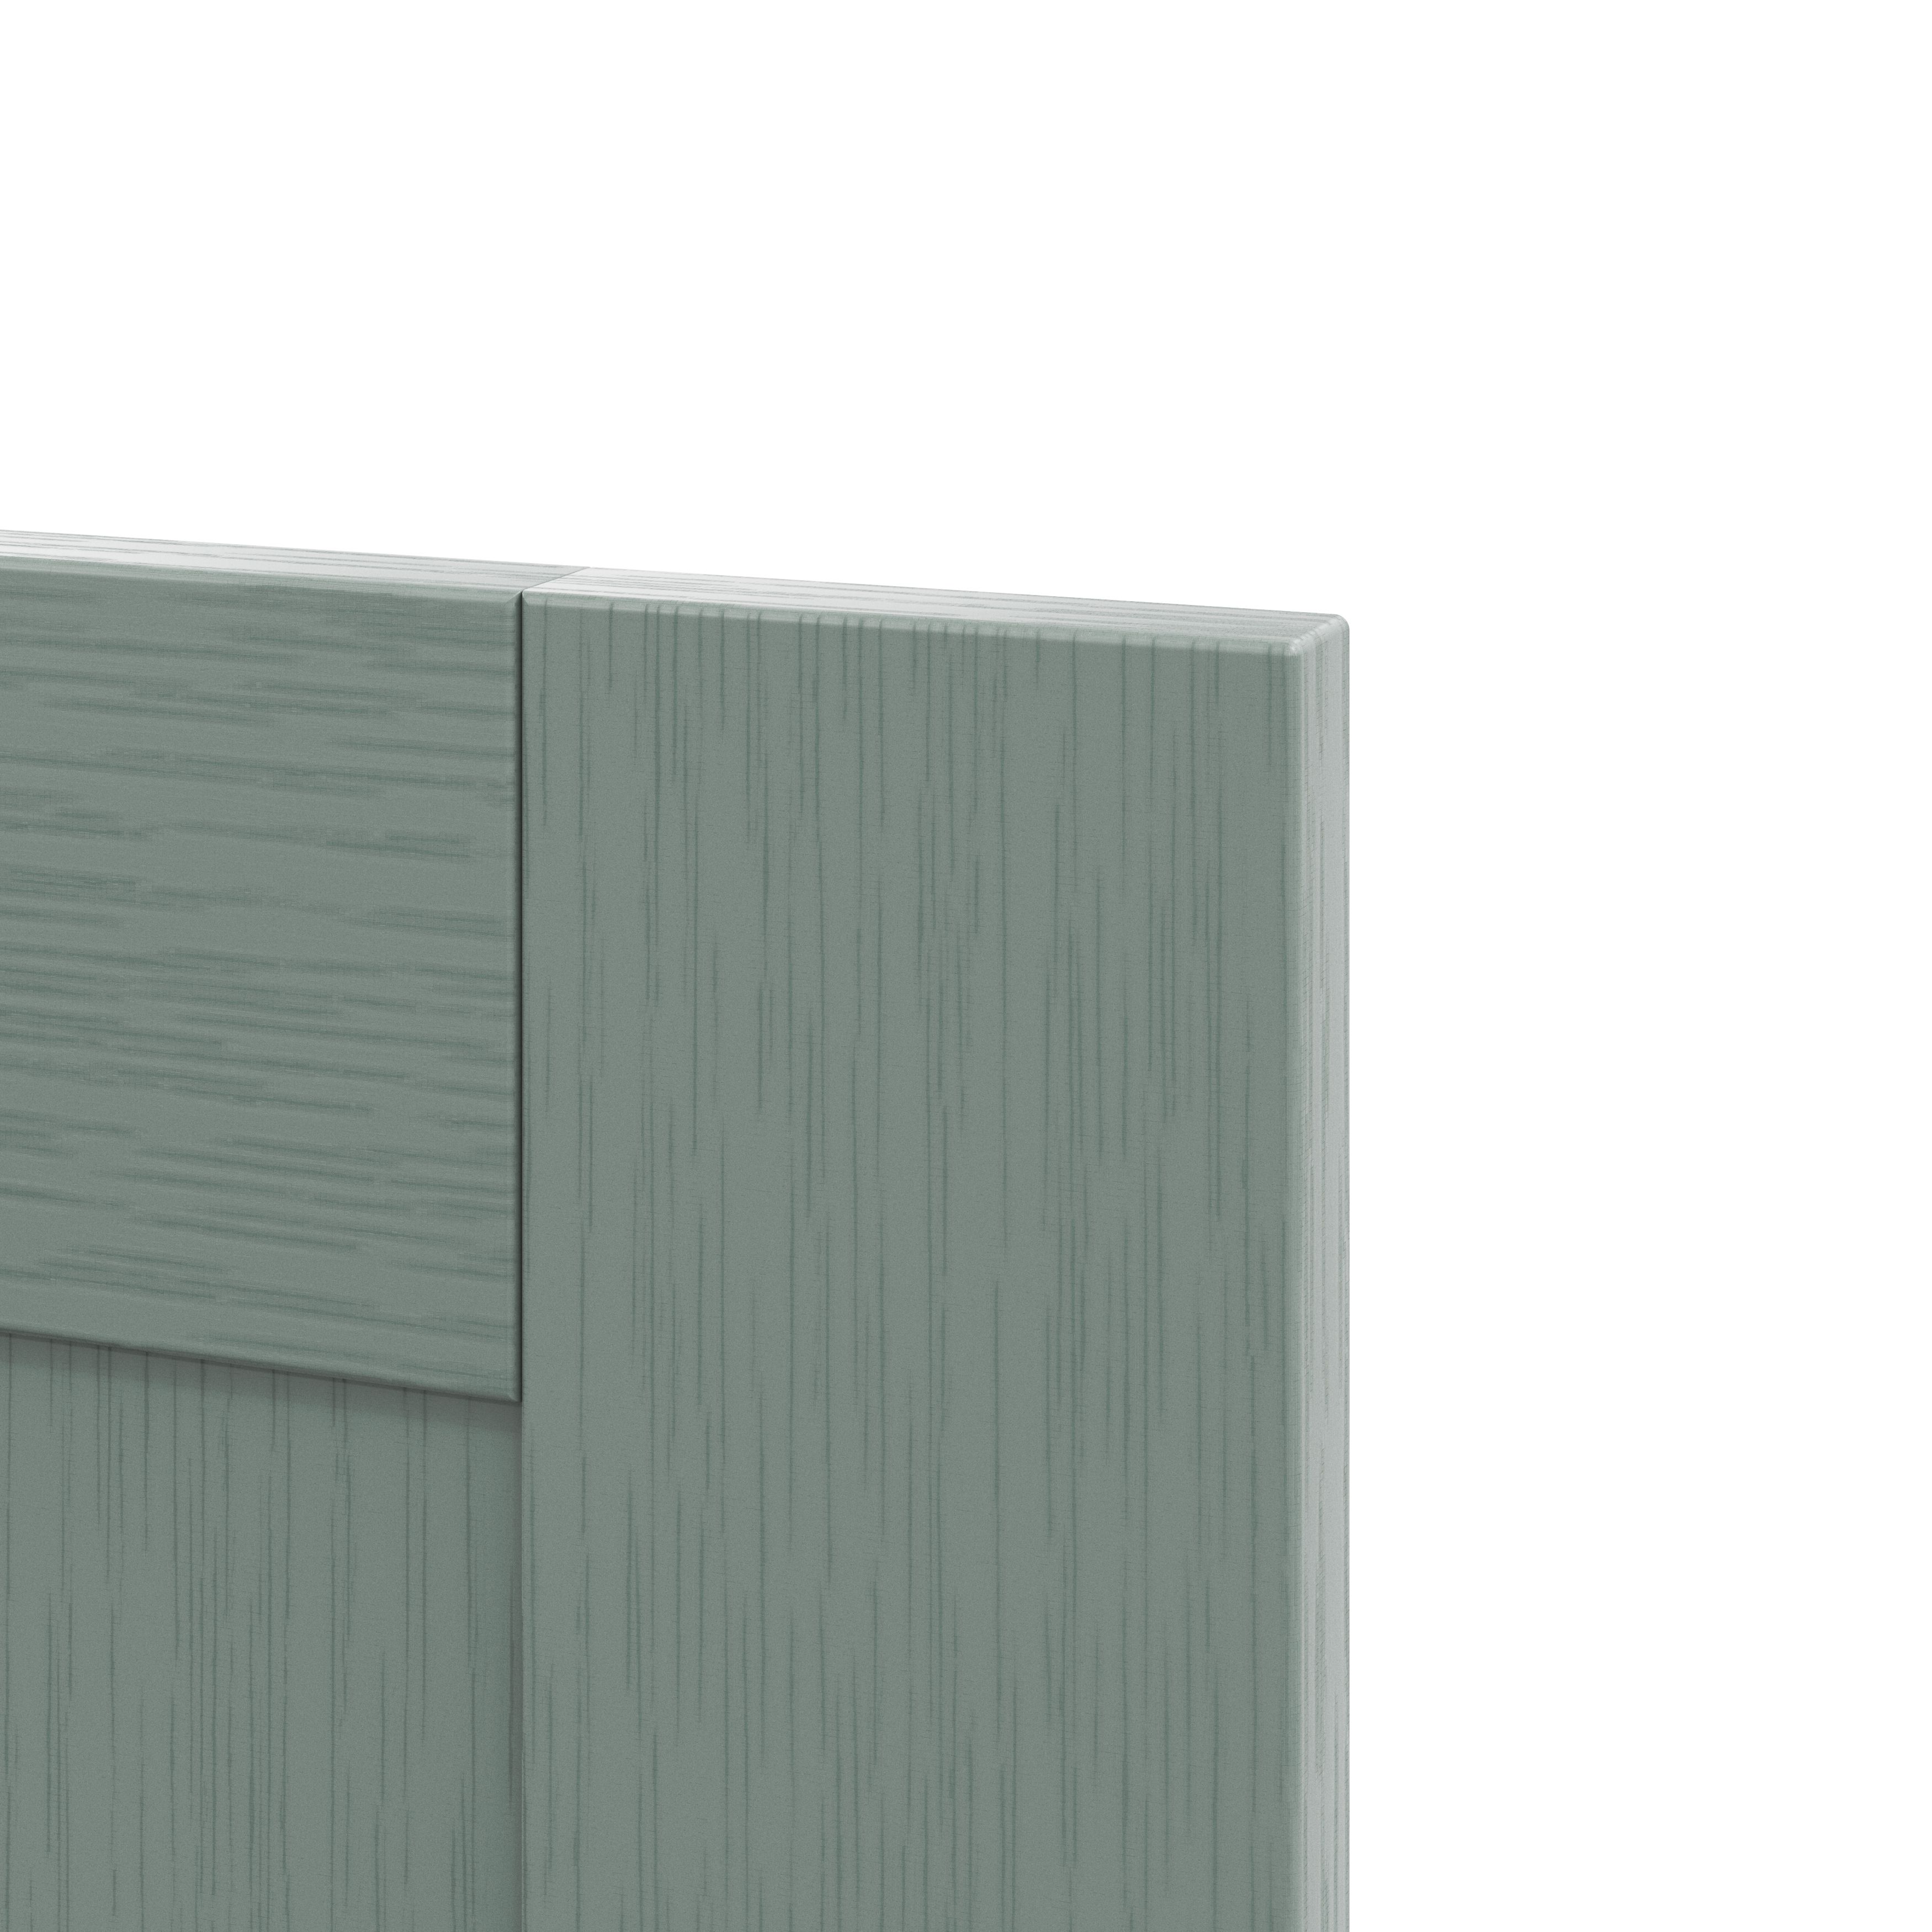 GoodHome Alpinia Matt Green Painted Wood Effect Shaker Drawer front, bridging door & bi fold door, (W)800mm (H)356mm (T)18mm